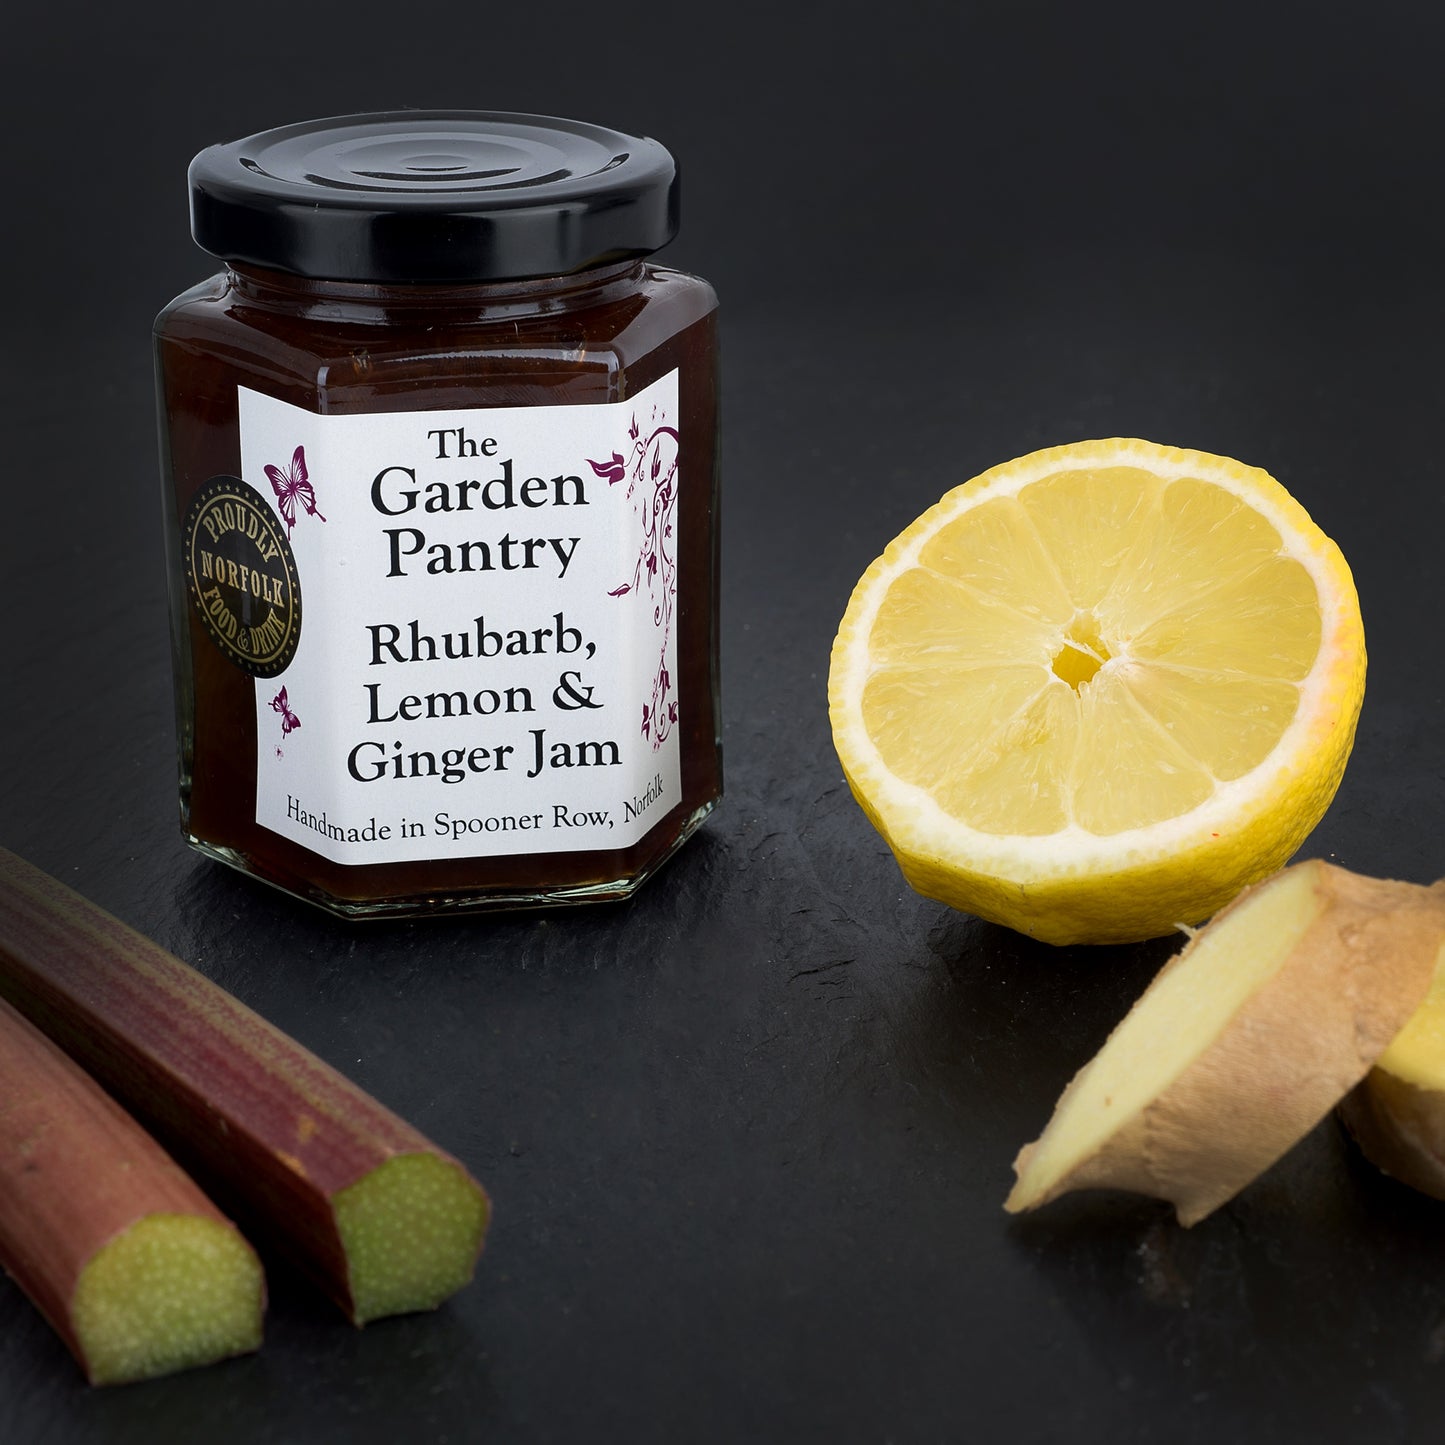 The Garden Pantry Rhubarb, Lemon & Ginger Jam